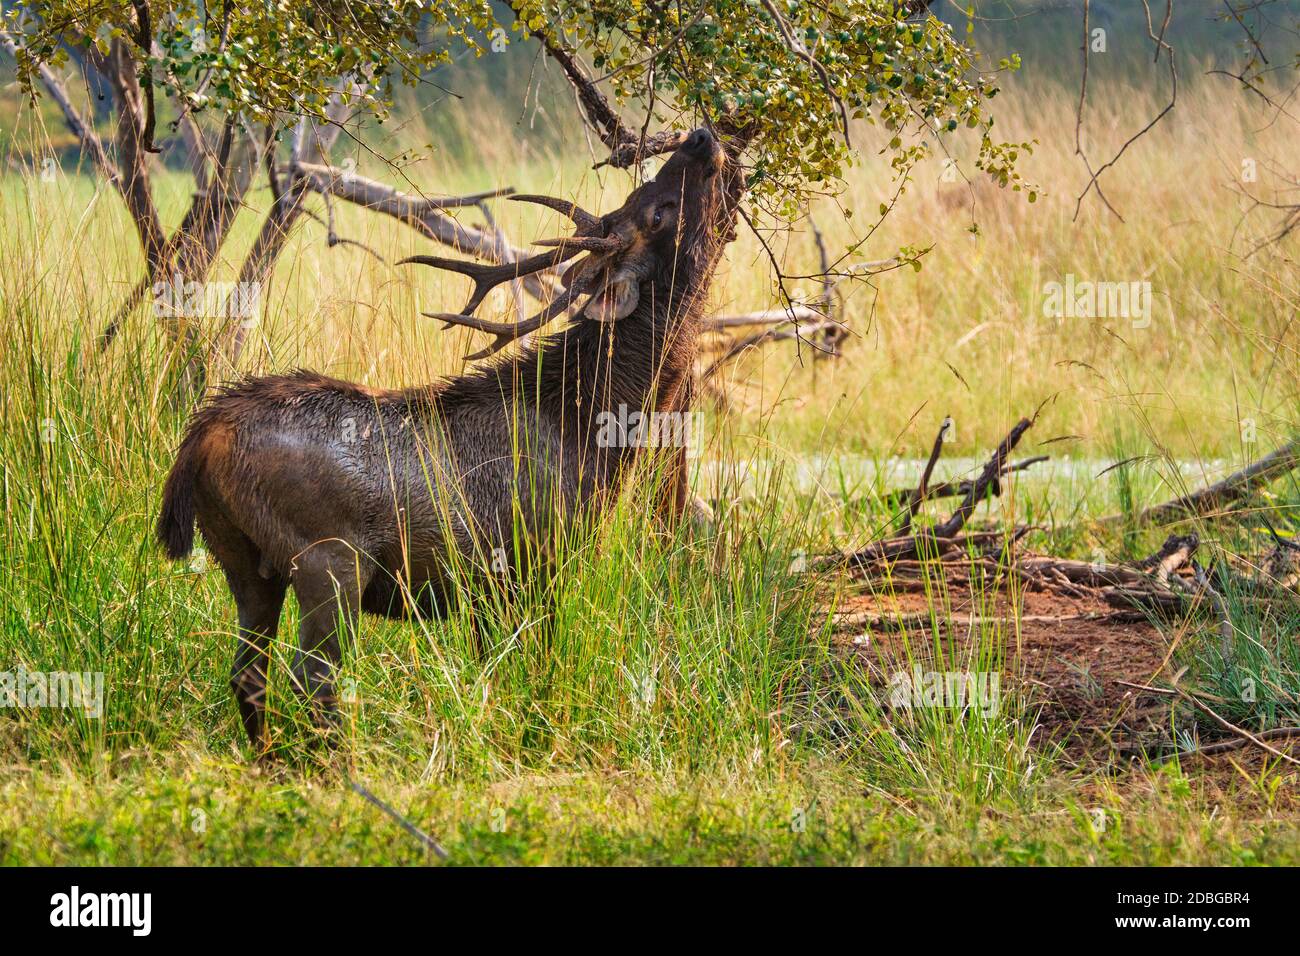 Le cerf de sambar (rusa unicolor) mangeant des feuilles d'arbre dans la forêt. Sambar est un grand cerf originaire du sous-continent indien et classé comme étant vulnérable spi Banque D'Images